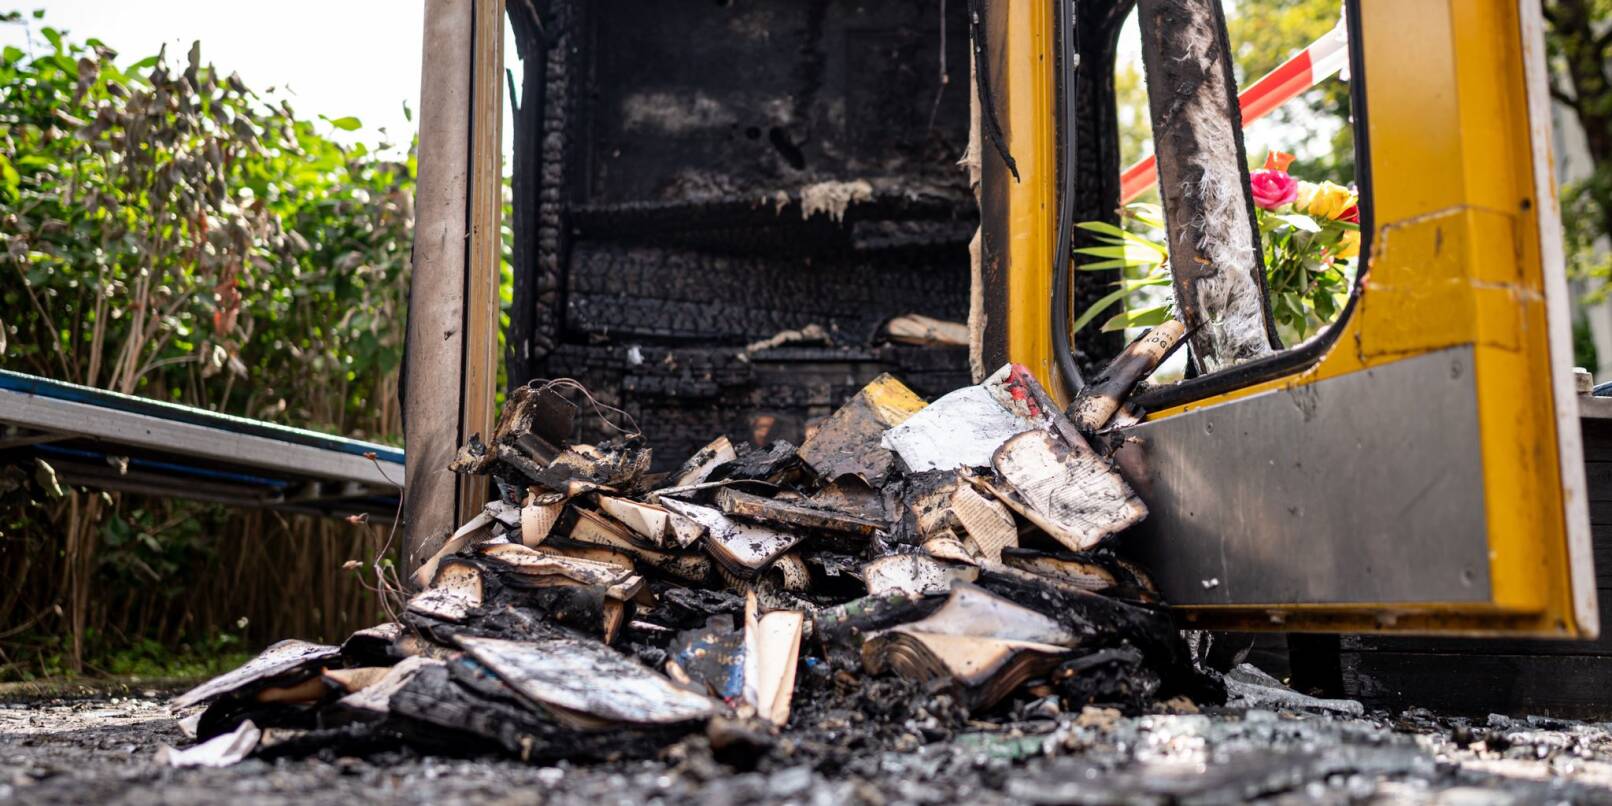 Verbrannte Bücher liegen in der ausgebrannten Bücherbox in der Nähe des Mahnmals «Gleis 17». Dem Täter ist die Polizei möglicherweise auf der Spur.